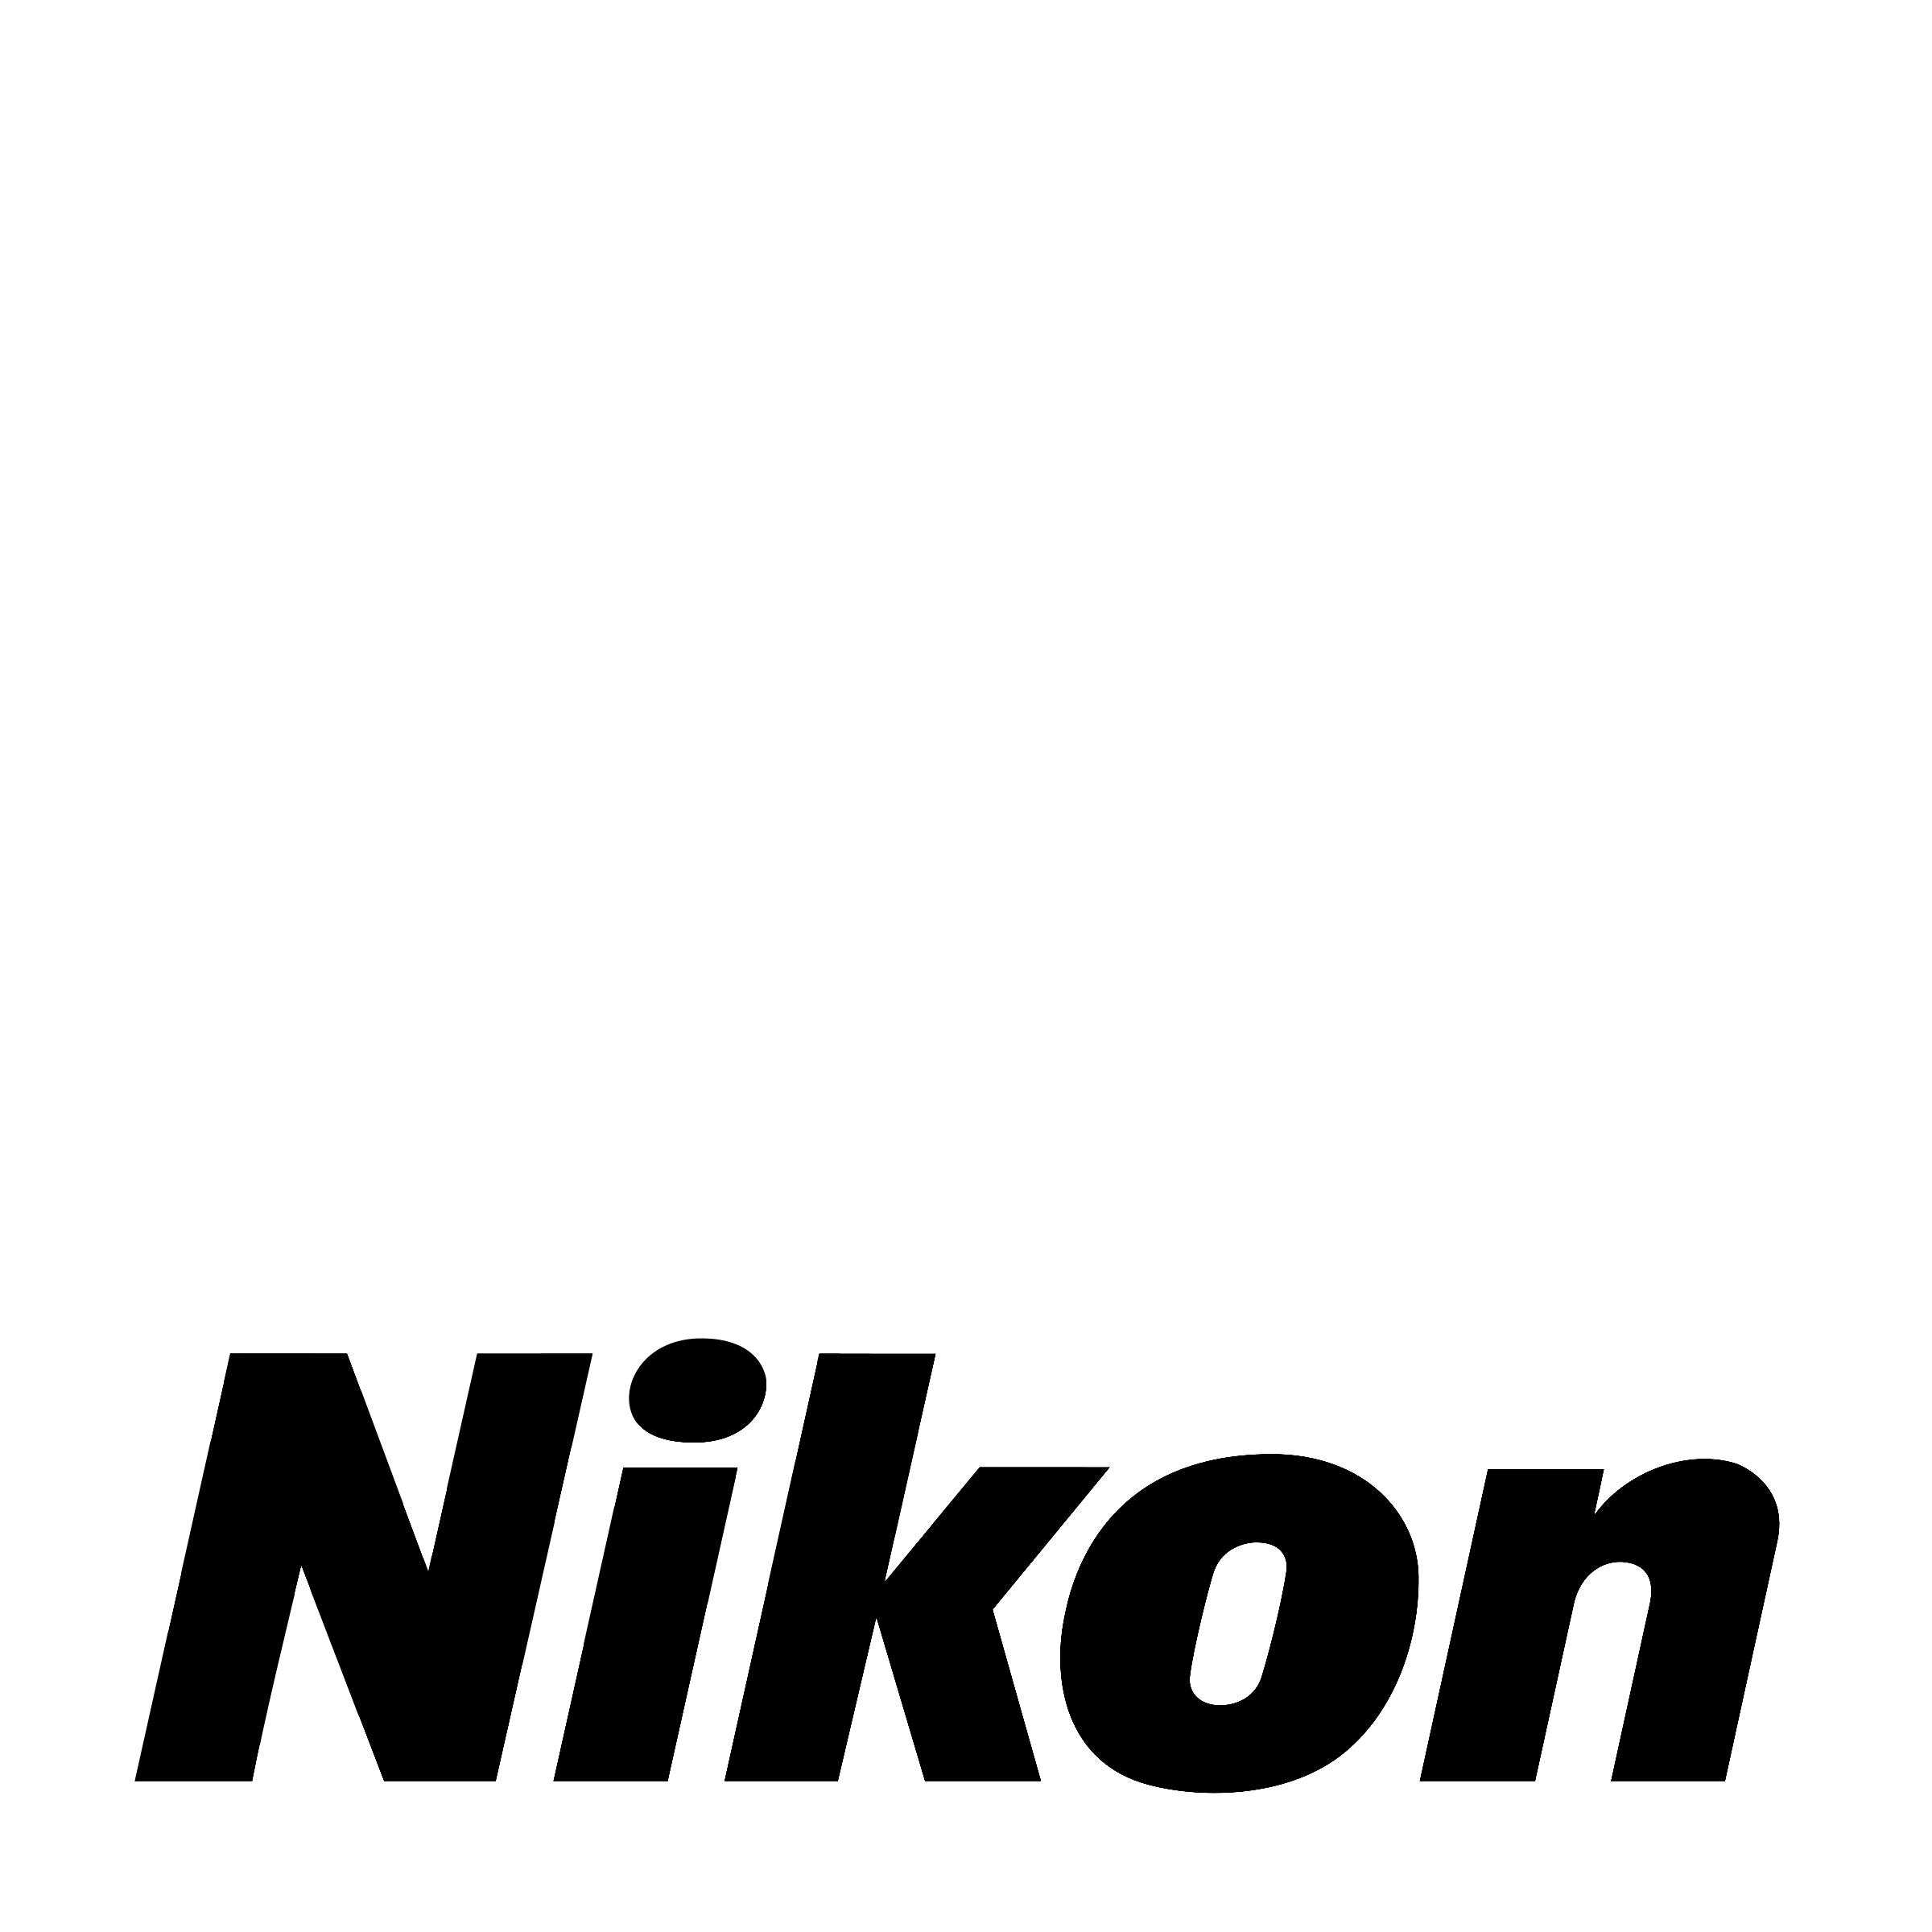 Nikon Logo Vector - Transpare